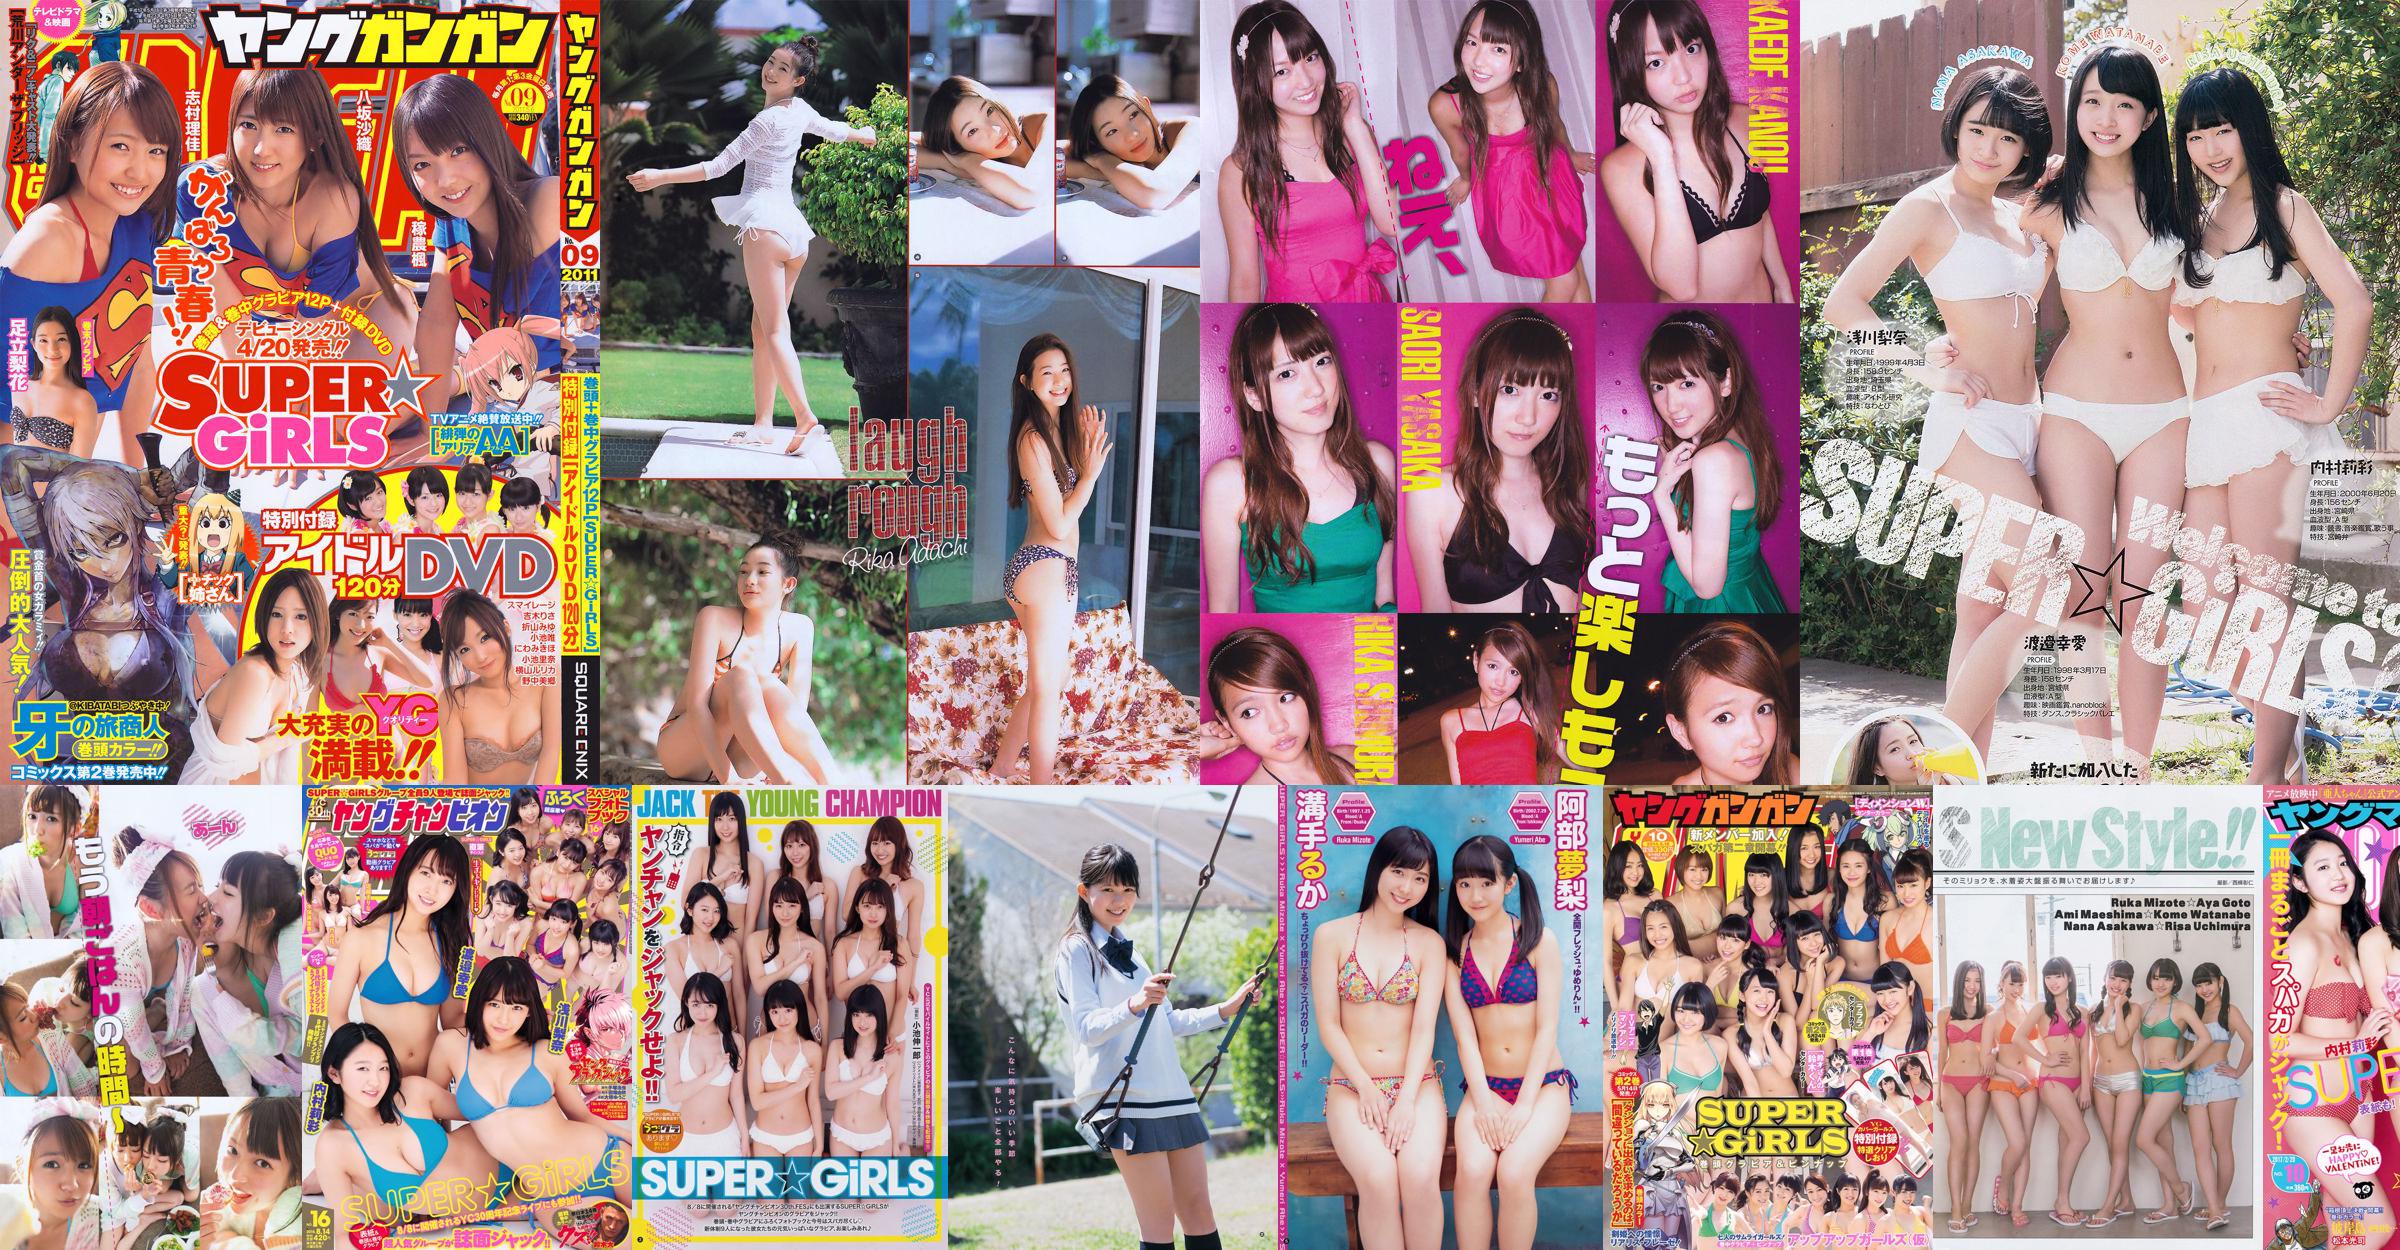 [Young Gangan] SUPER ☆ GiRLS Momose Misaki 2011 No.14 Photo Magazine No.586eab Trang 2